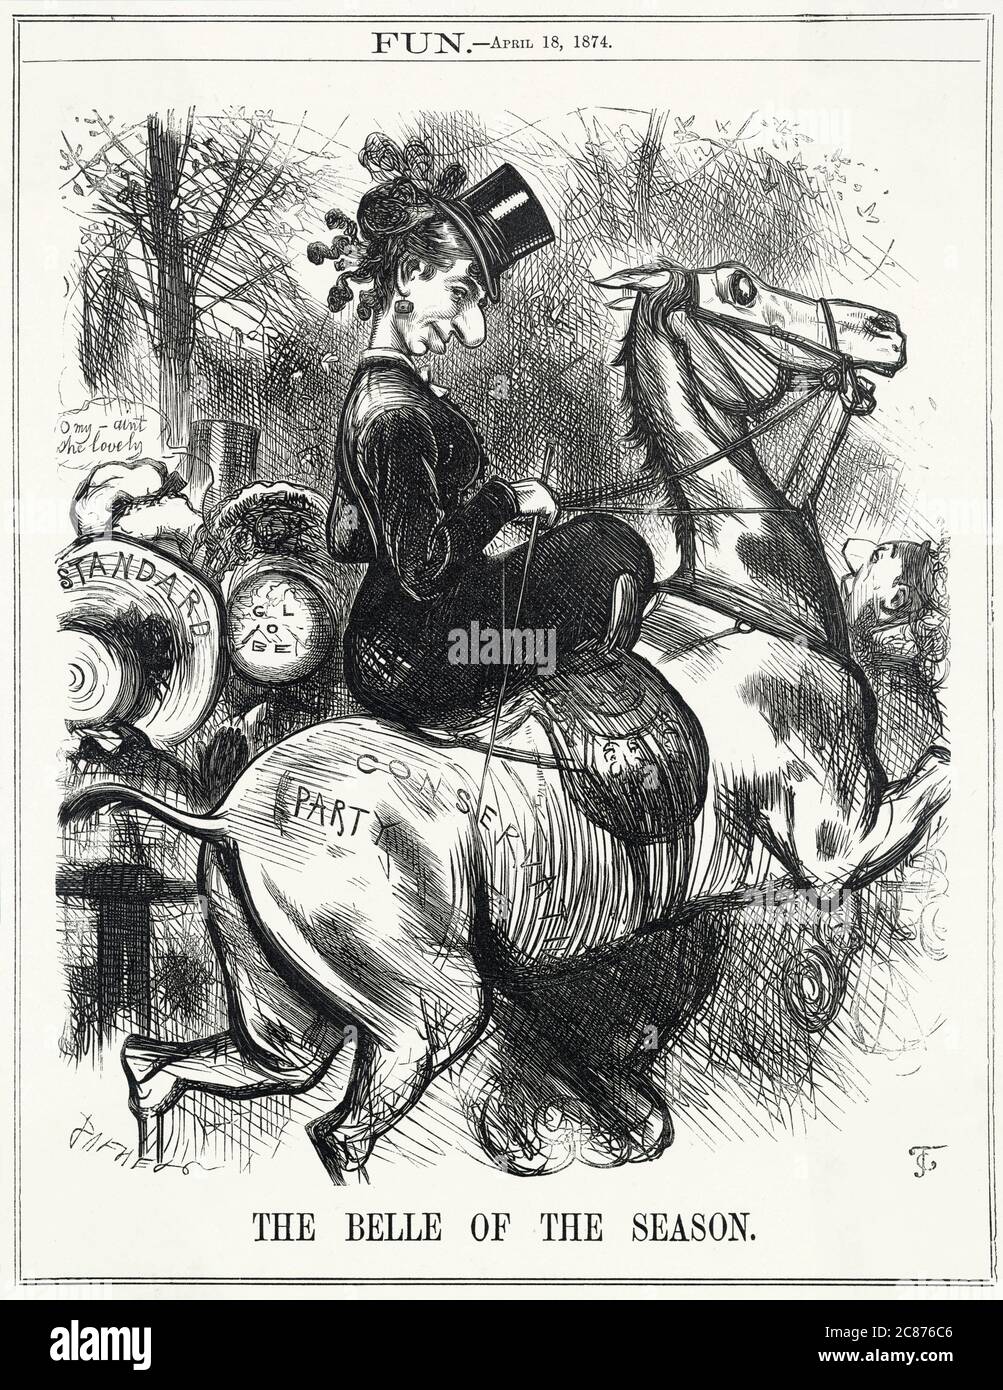 Cartoon, die Belle der Saison -- ein satirischer Kommentar zur Popularität der Konservativen Partei, die die jüngsten Parlamentswahlen gewonnen hat. Benjamin Disraeli erscheint als Debütant auf dem Pferd, lächelt den Betrachter kosch an, mit Figuren auf der linken Seite, die die Standard und Globe Zeitungen repräsentieren. Datum: 1874 Stockfoto